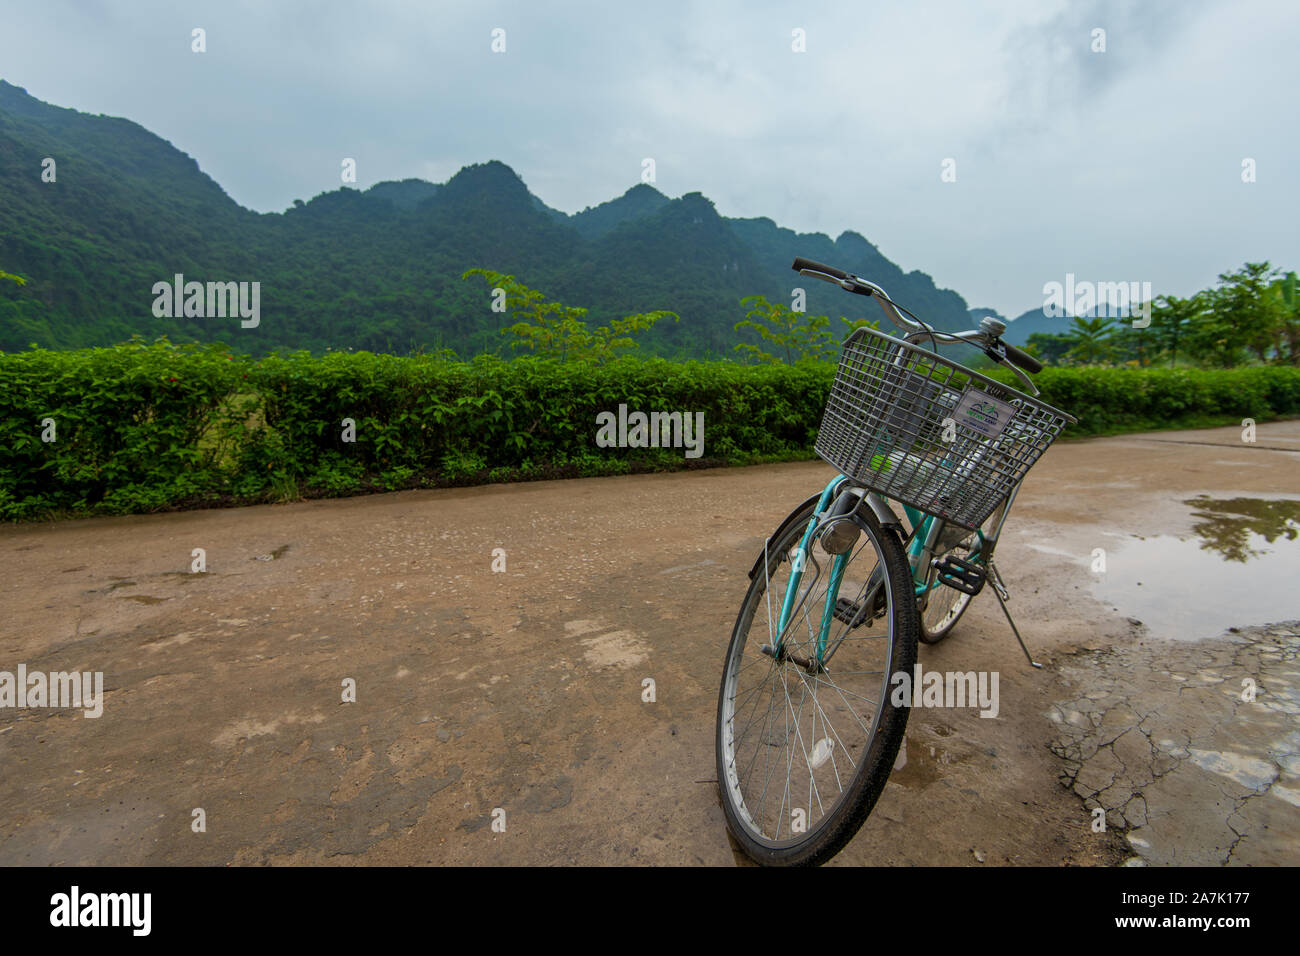 Cat Ba, le Vietnam - 15 octobre 2019 : Un pushbike se tenait immobile contre la magnifique toile de fond de l'île Cat Ba sur la baie d'Ha Long, Vietnam du Nord Banque D'Images